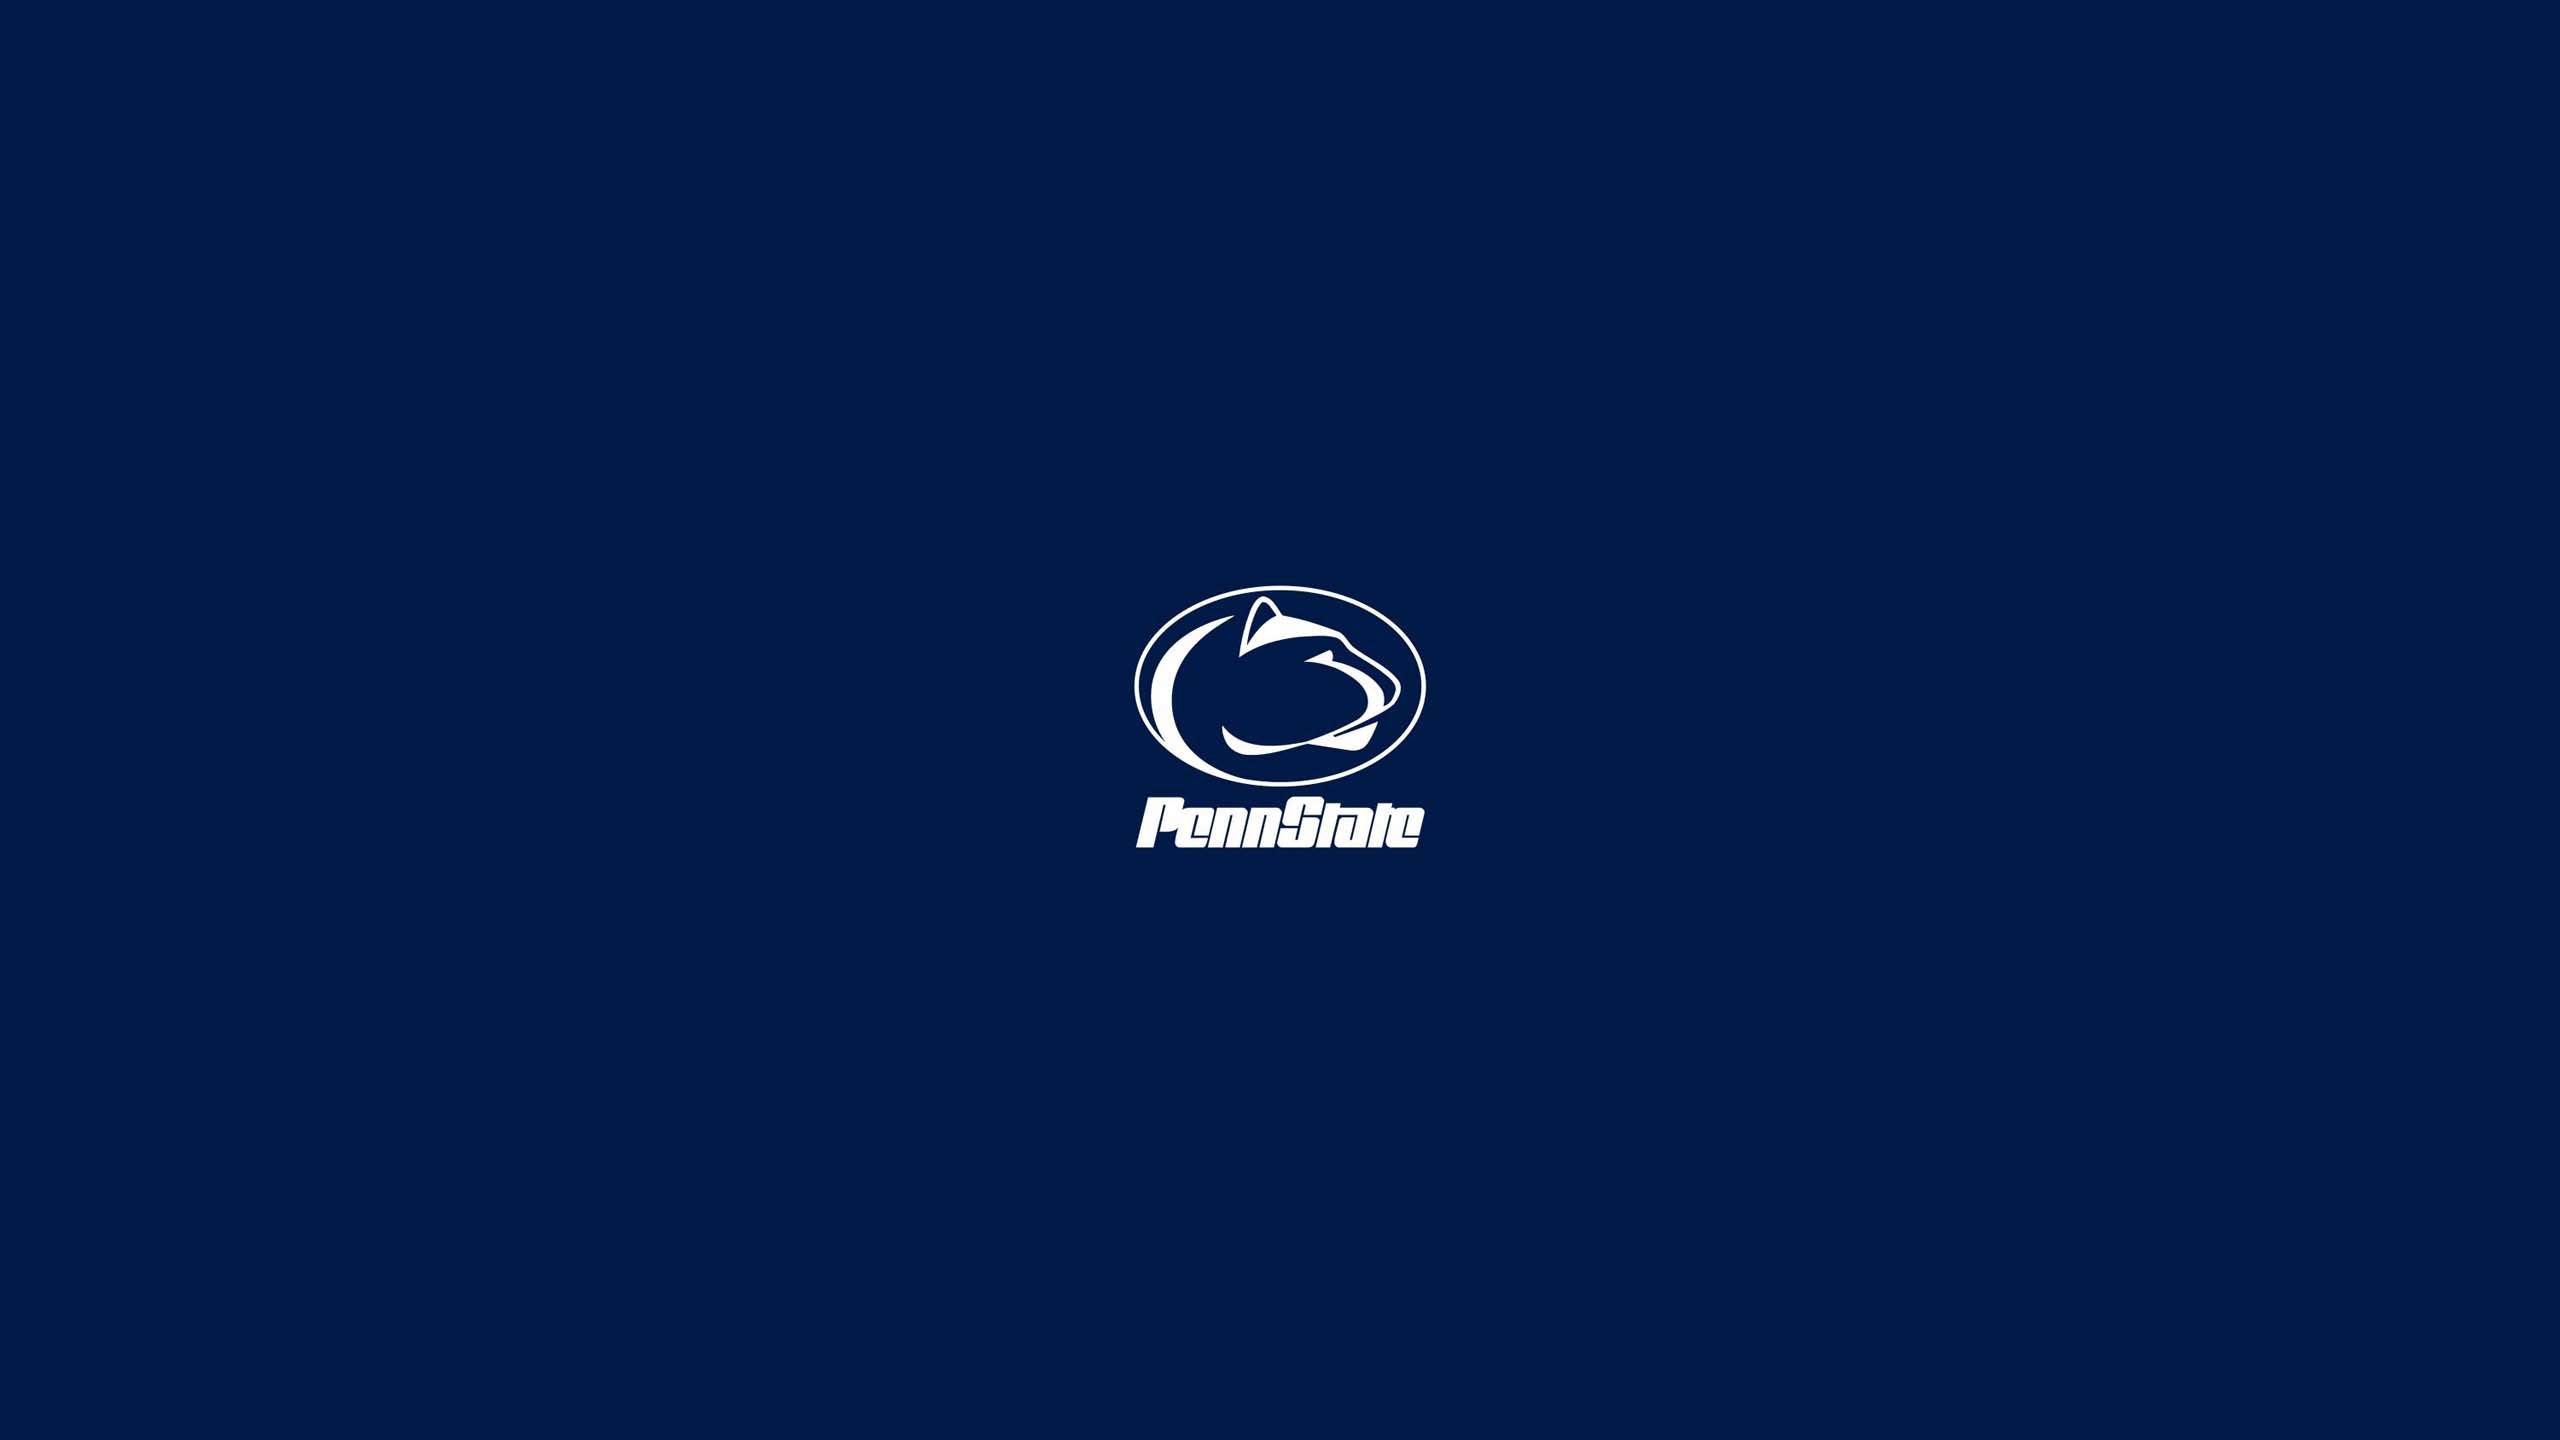 Penn State Logo Wallpaper 44452 25601440 px fond ecran